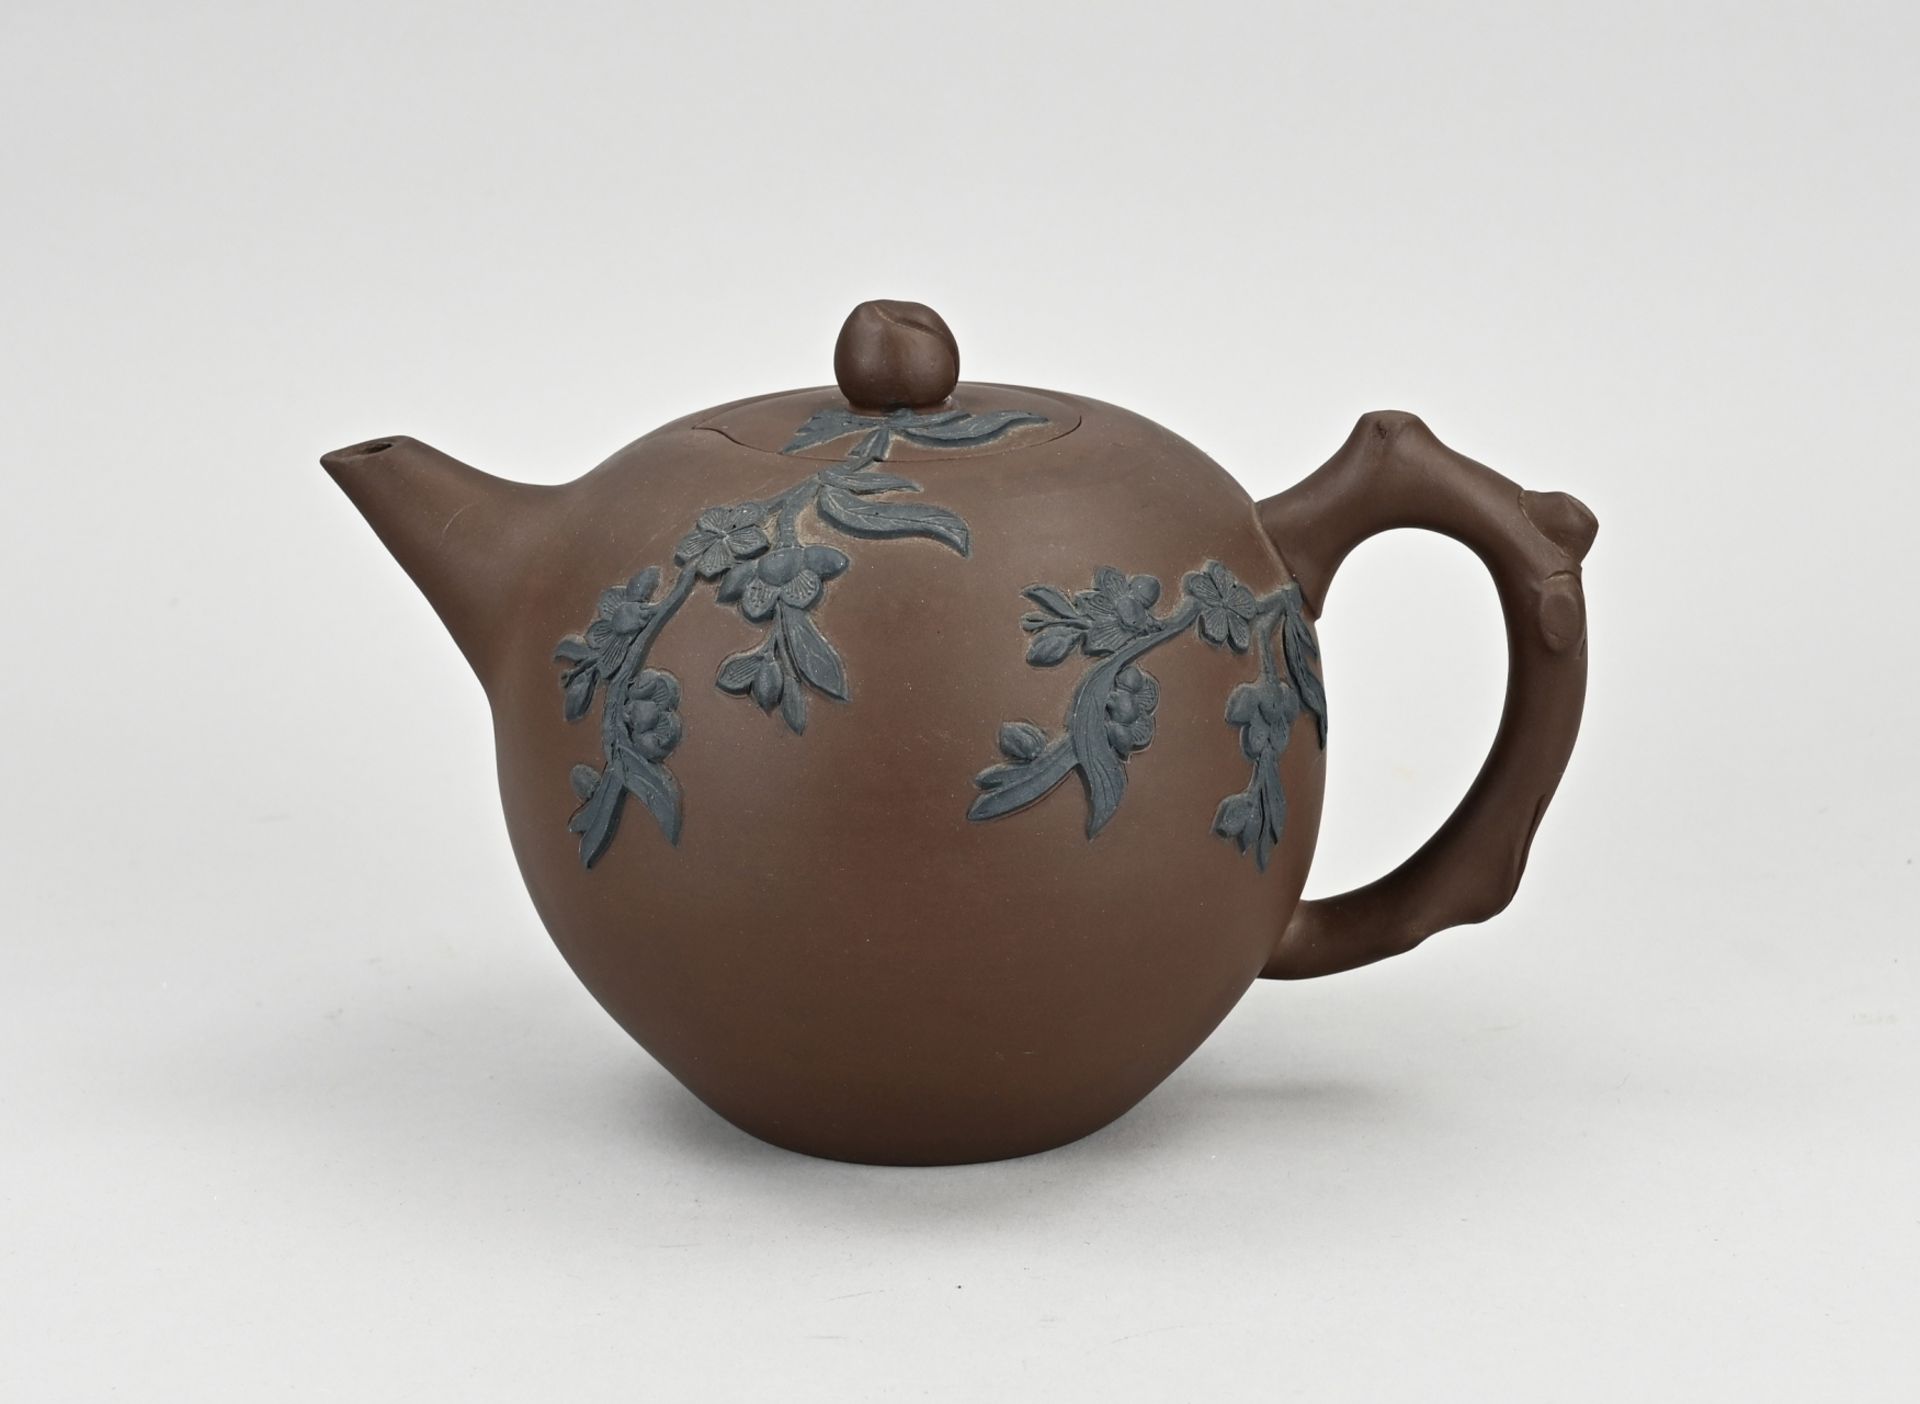 Yixing teapot Ã˜ 14 cm.